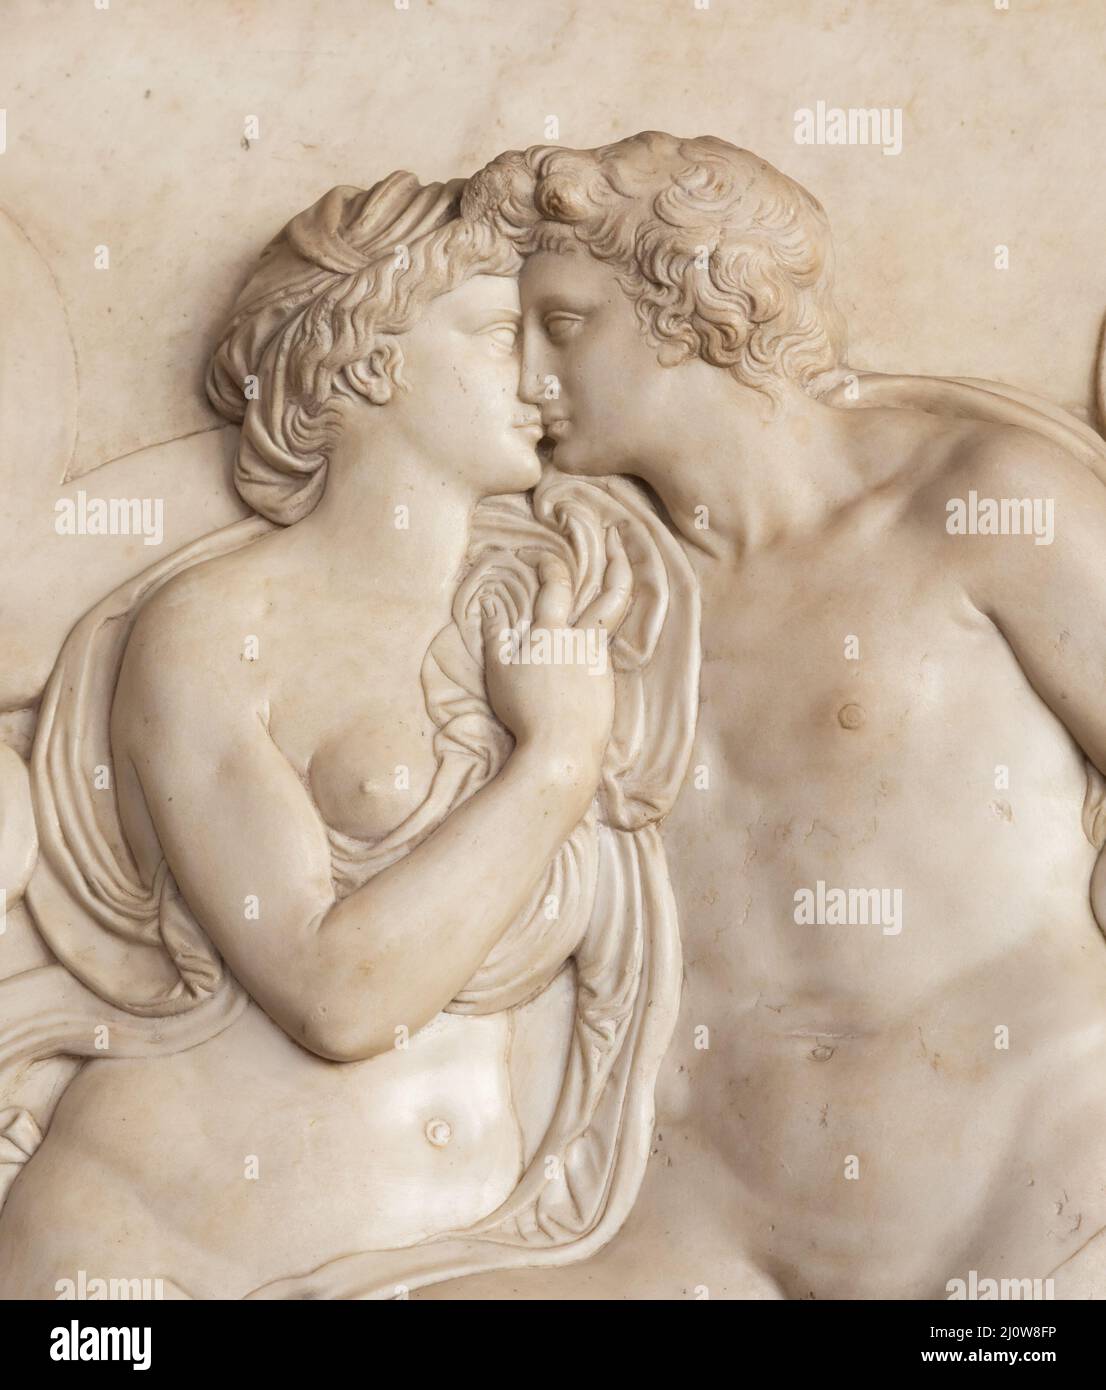 Scultura antica con coppia baciante, Firenze - Italia Foto Stock